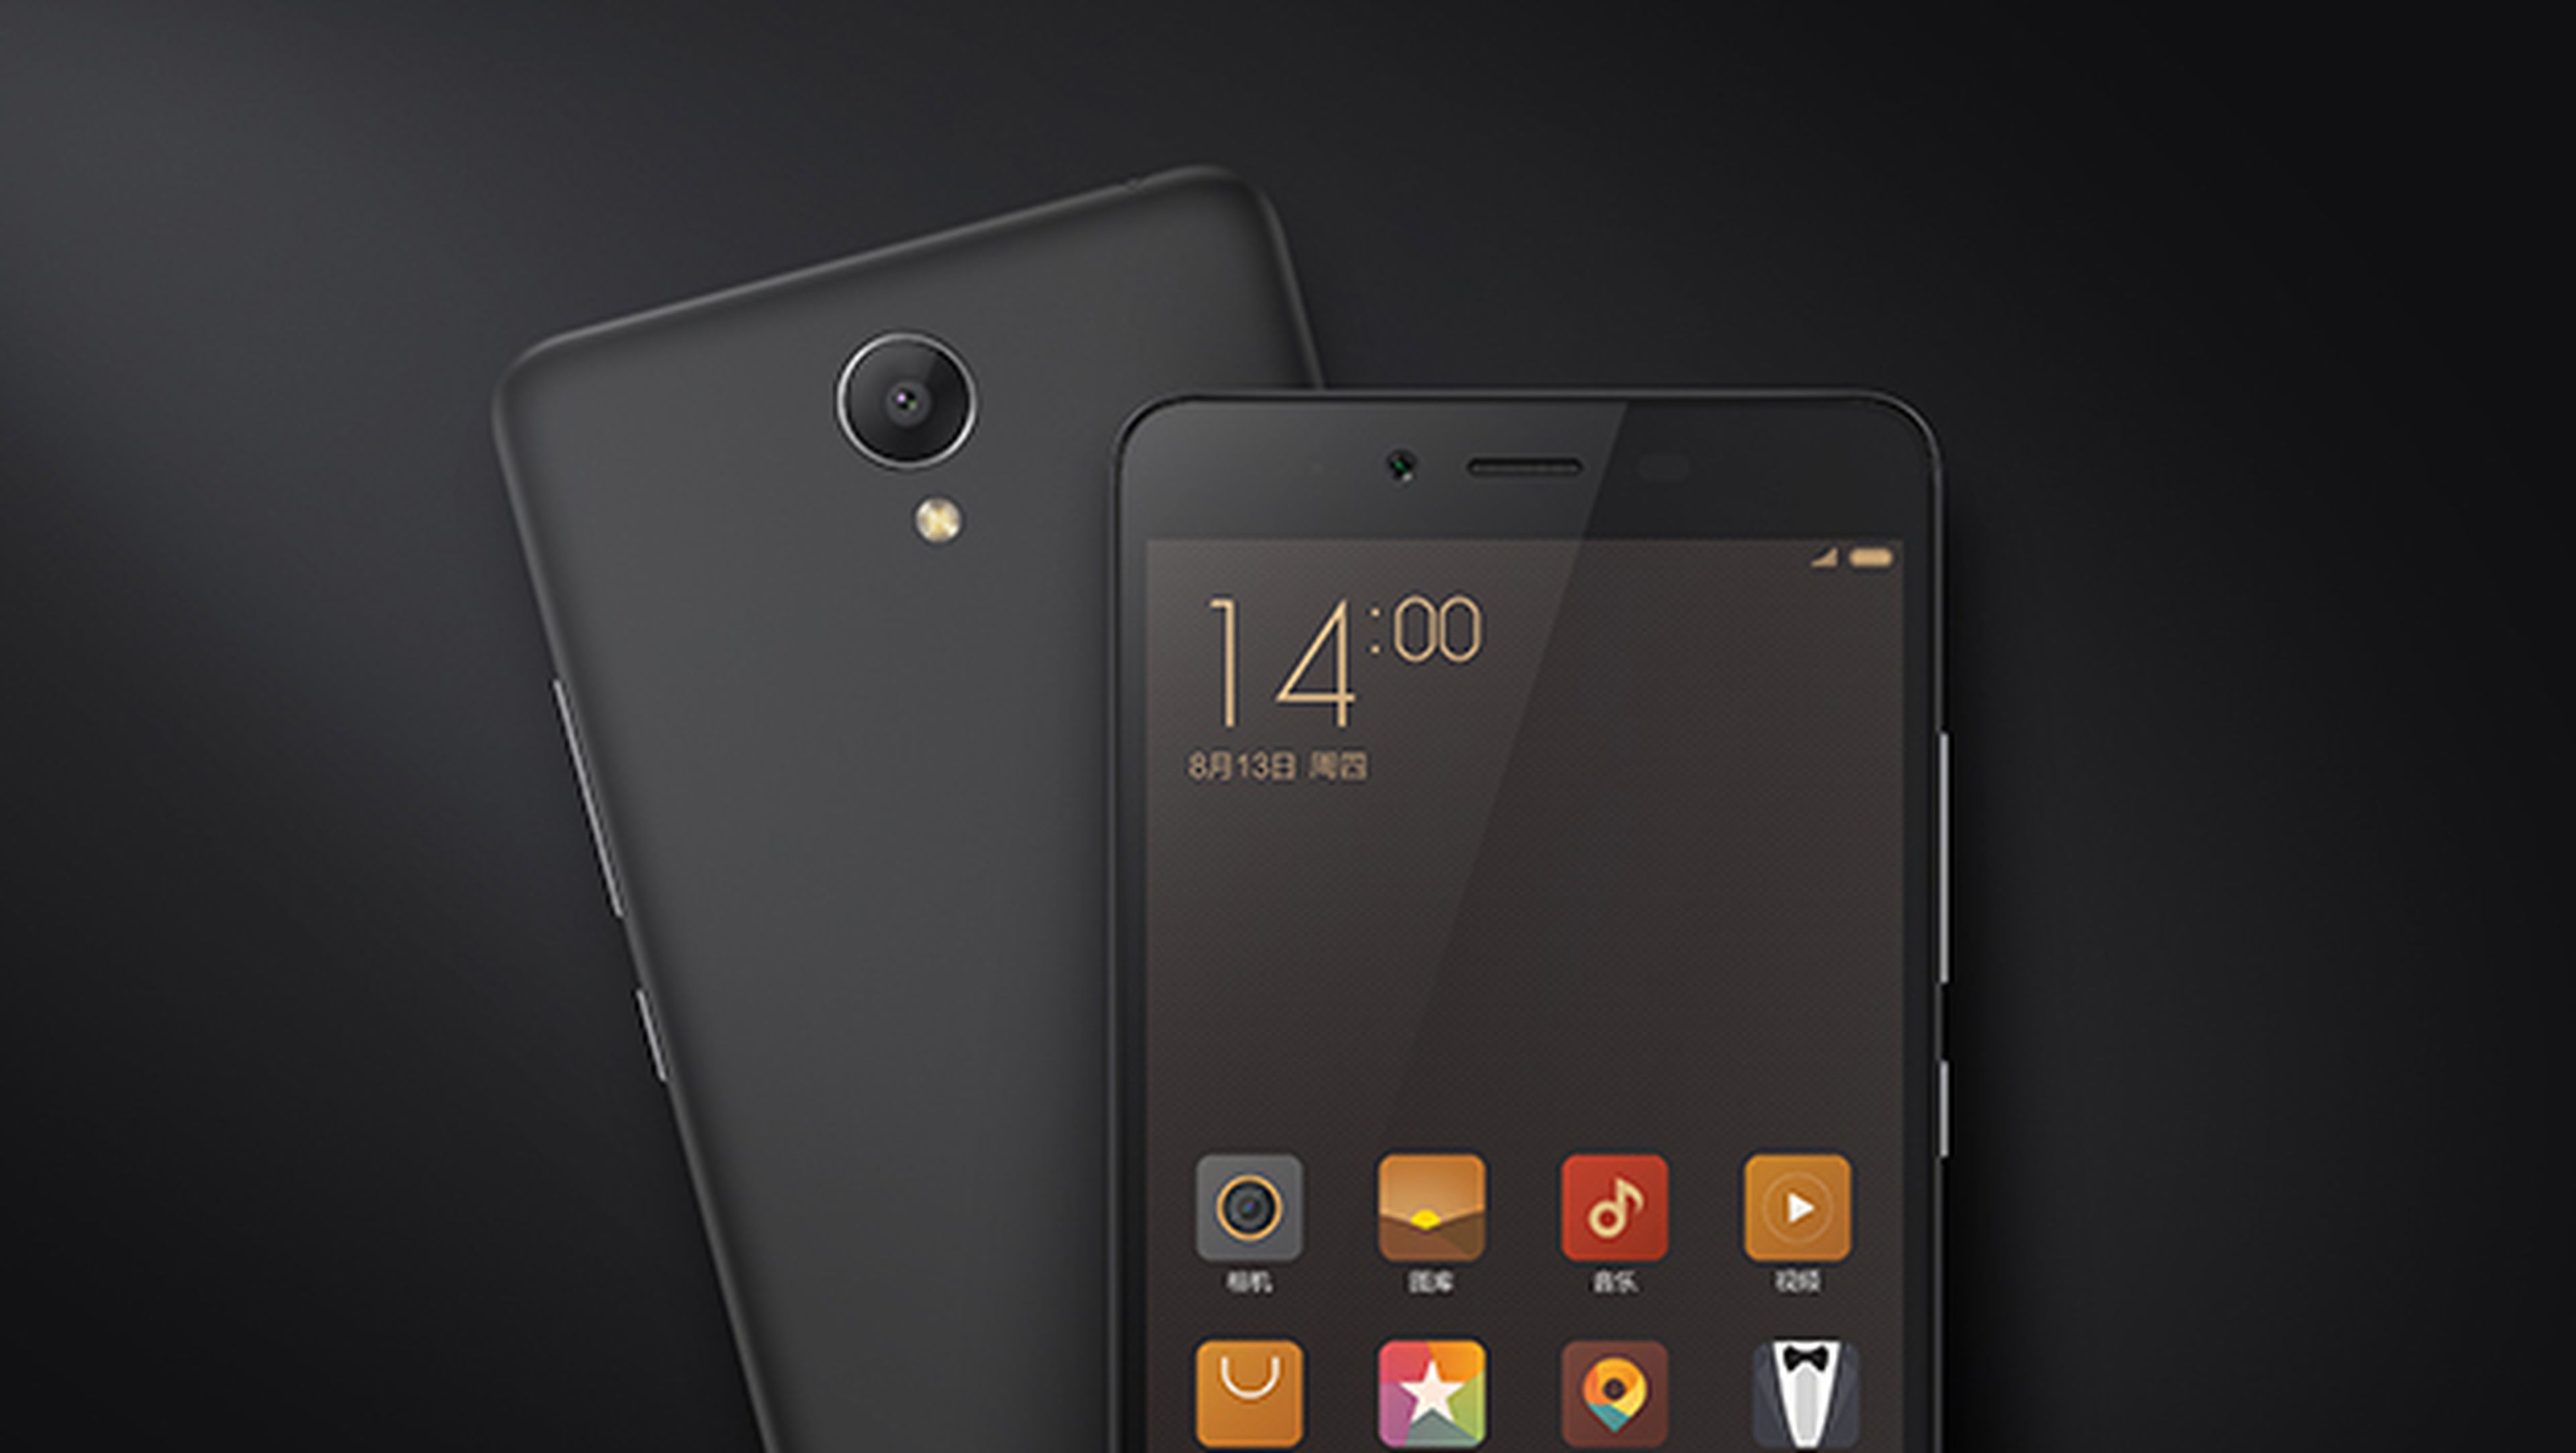 Un nuevo Xiaomi aparece con Android 7.1.2 Nougat